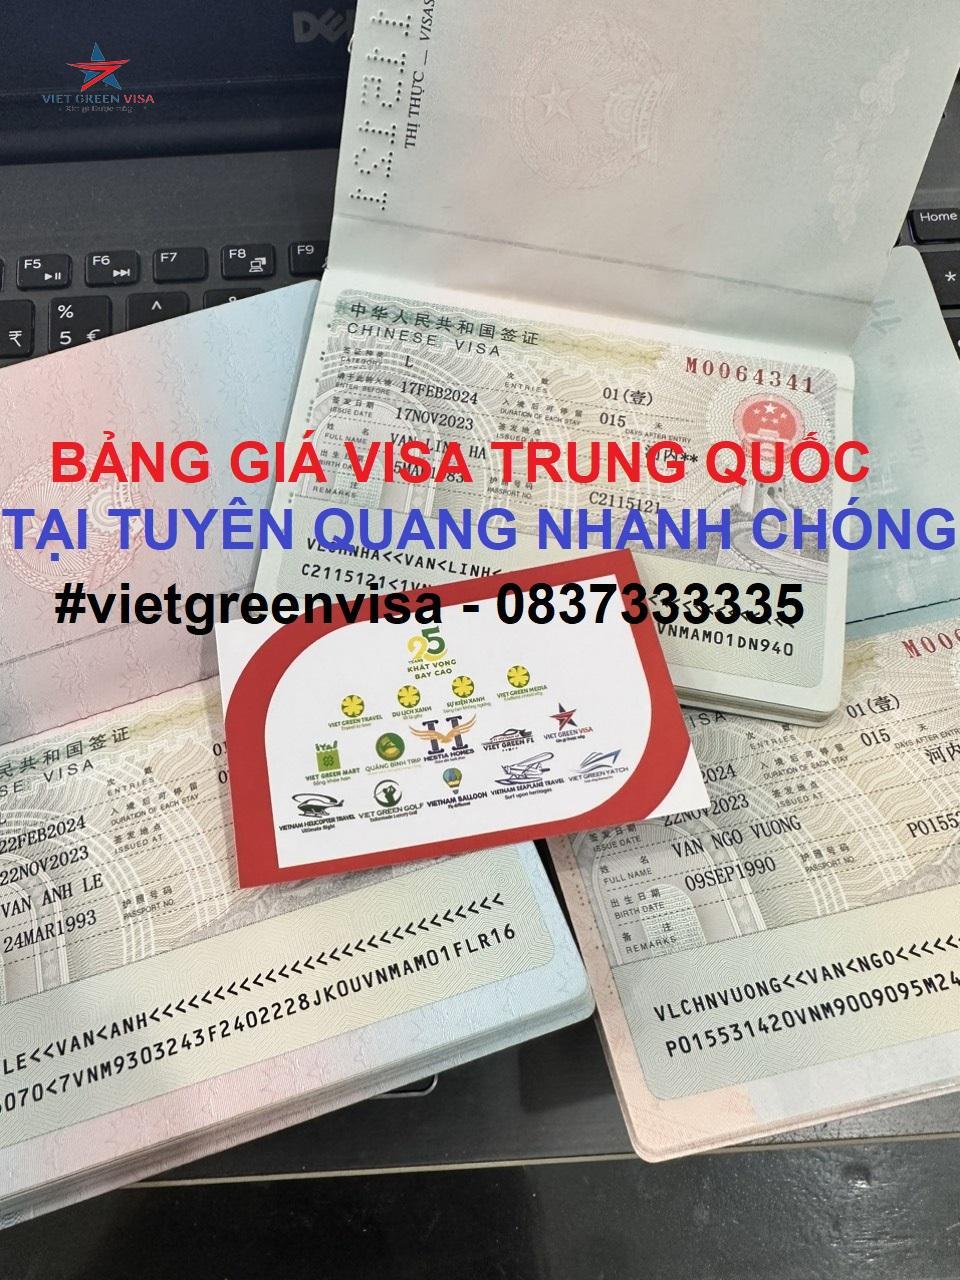 Dịch vụ xin visa Trung Quốc tại Tuyên Quang nhanh nhất